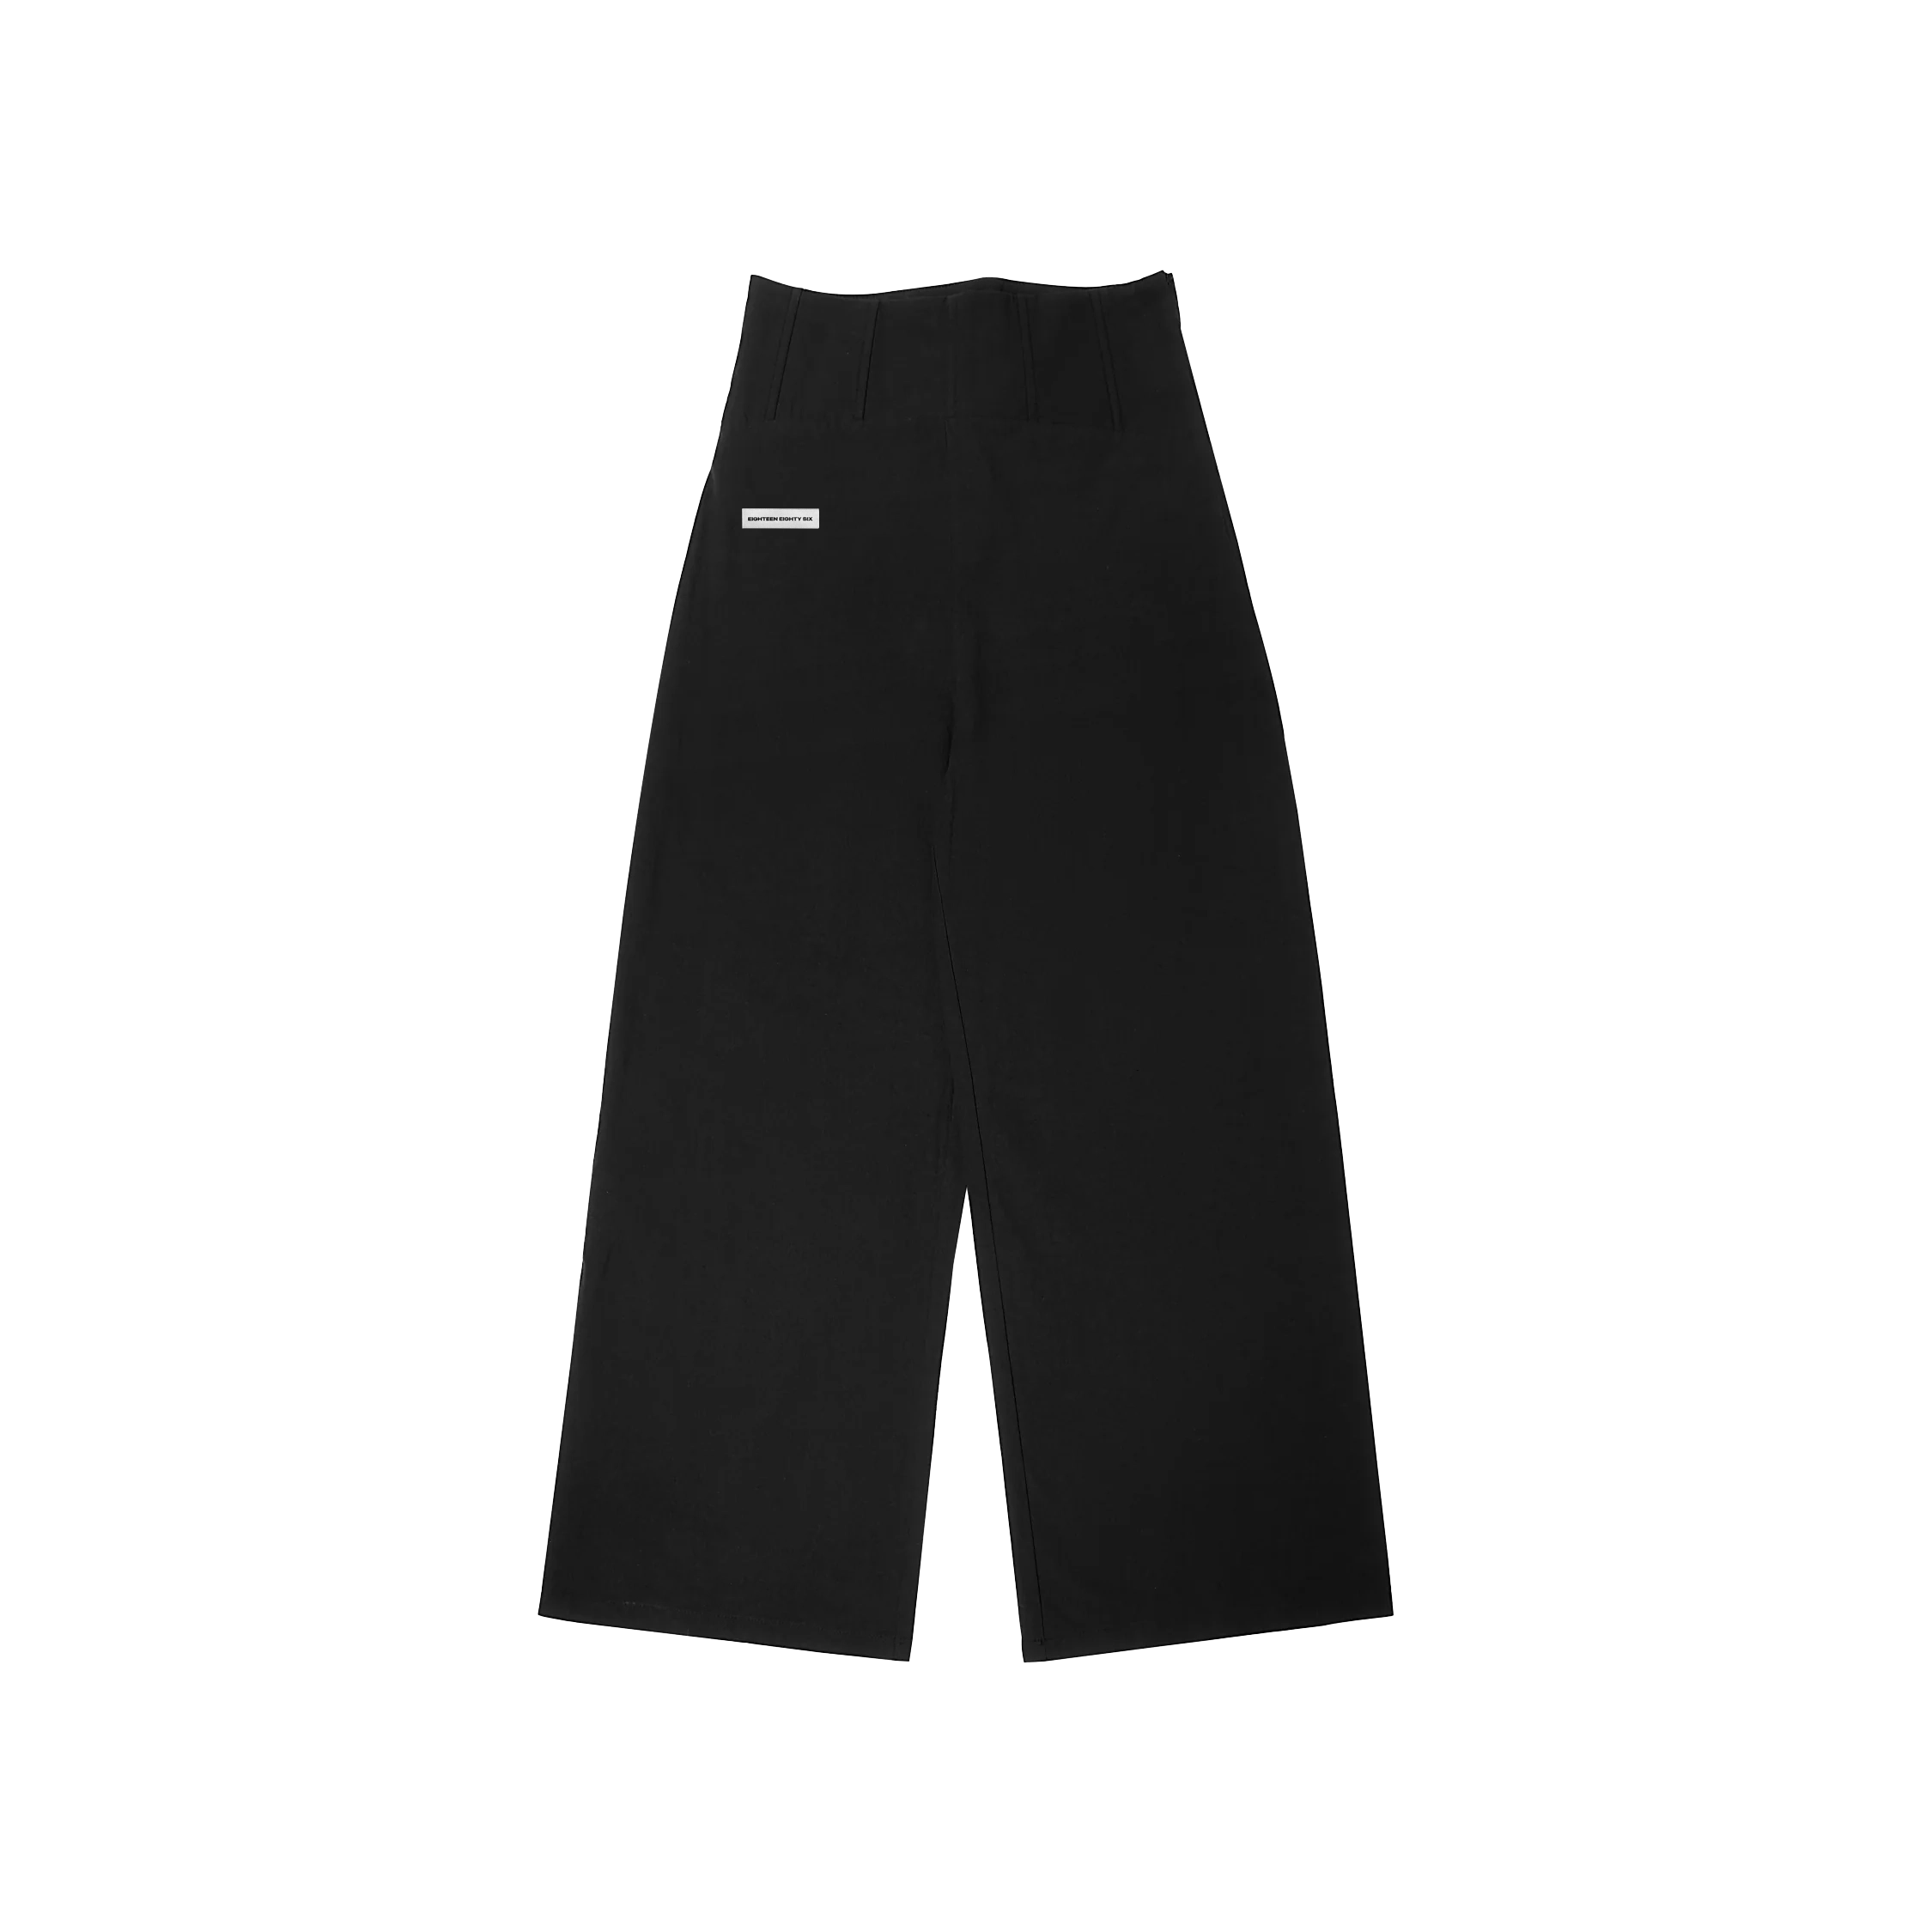 Corset style wide leg pants - Black – 1886 fashion